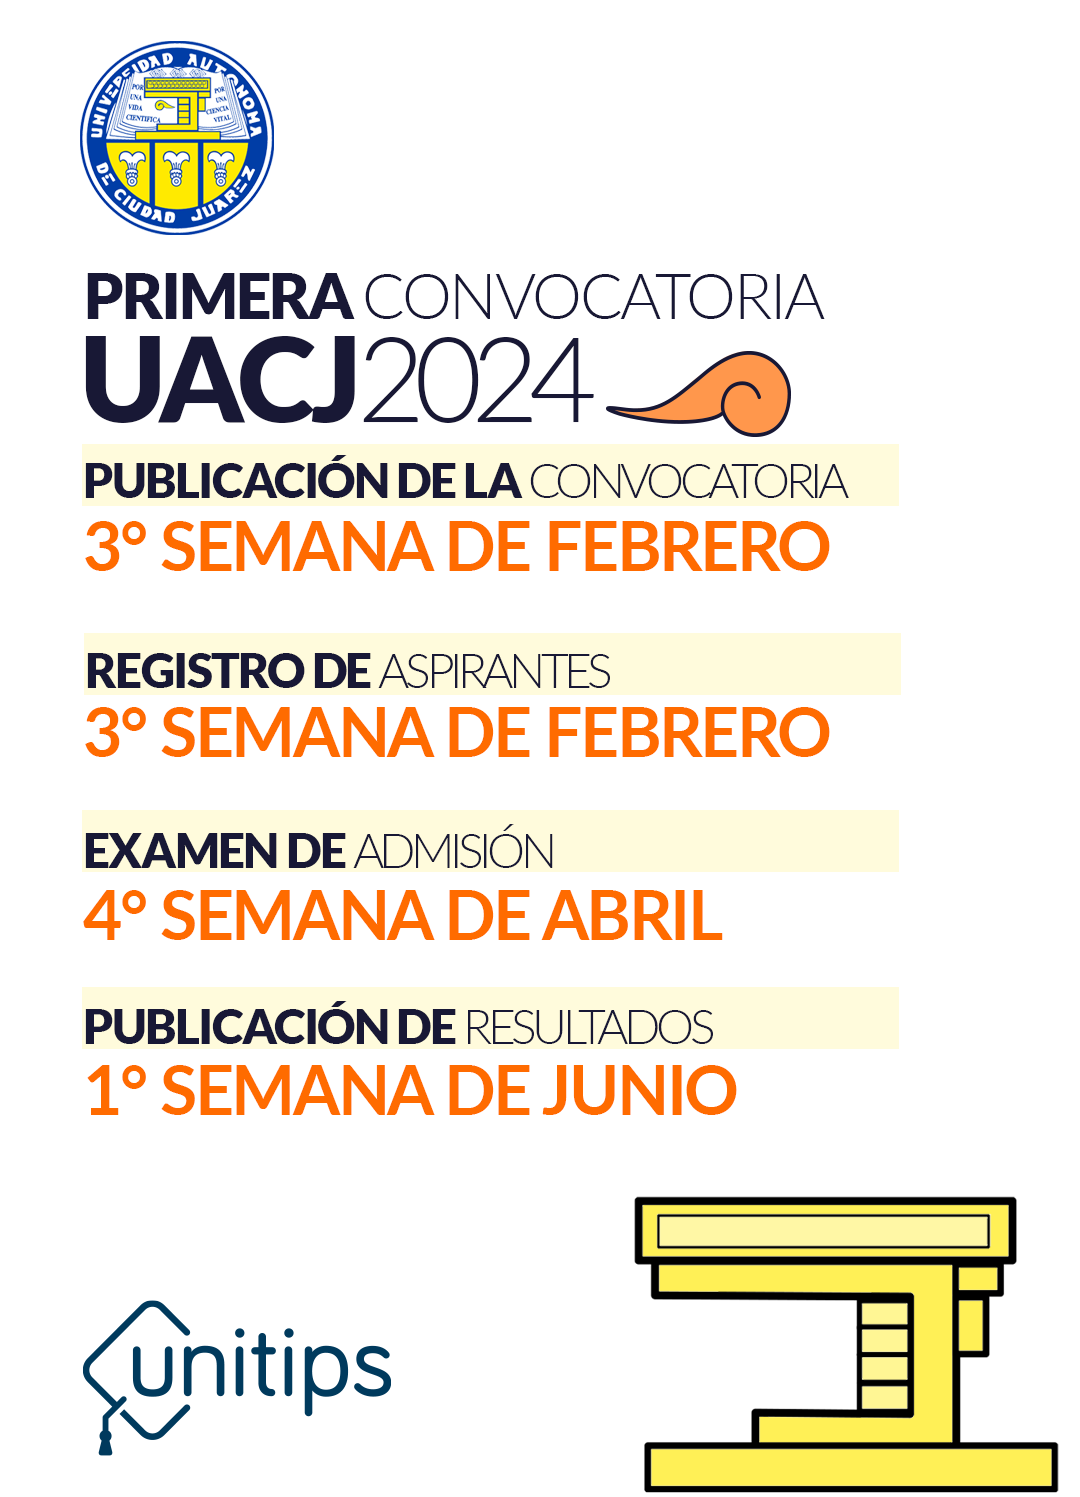 Imagen-interna-calendario-CONV_UACJ